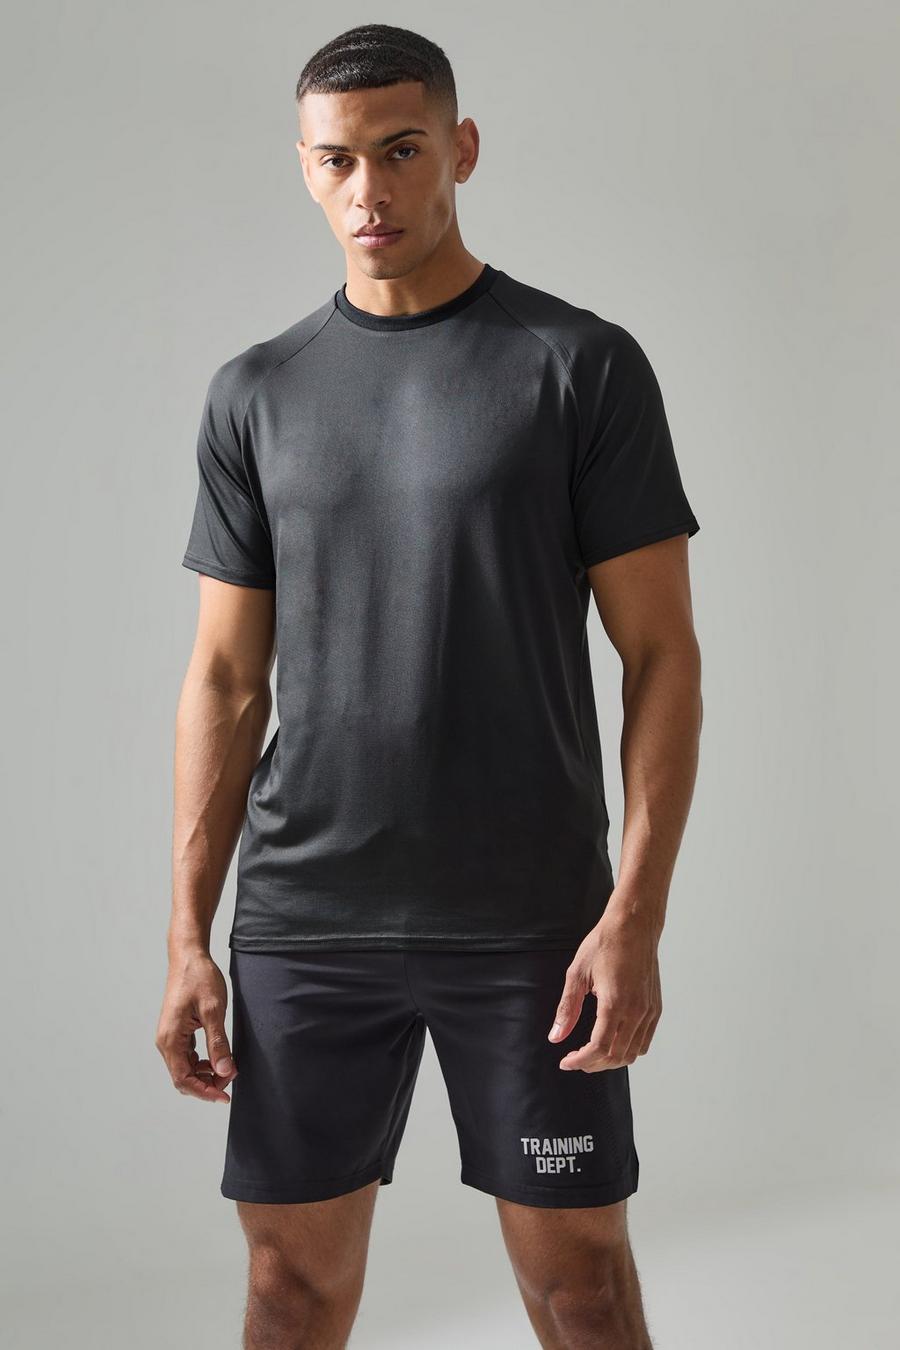 T-shirt leggera Man Active Essentials Gym con maniche raglan, Black